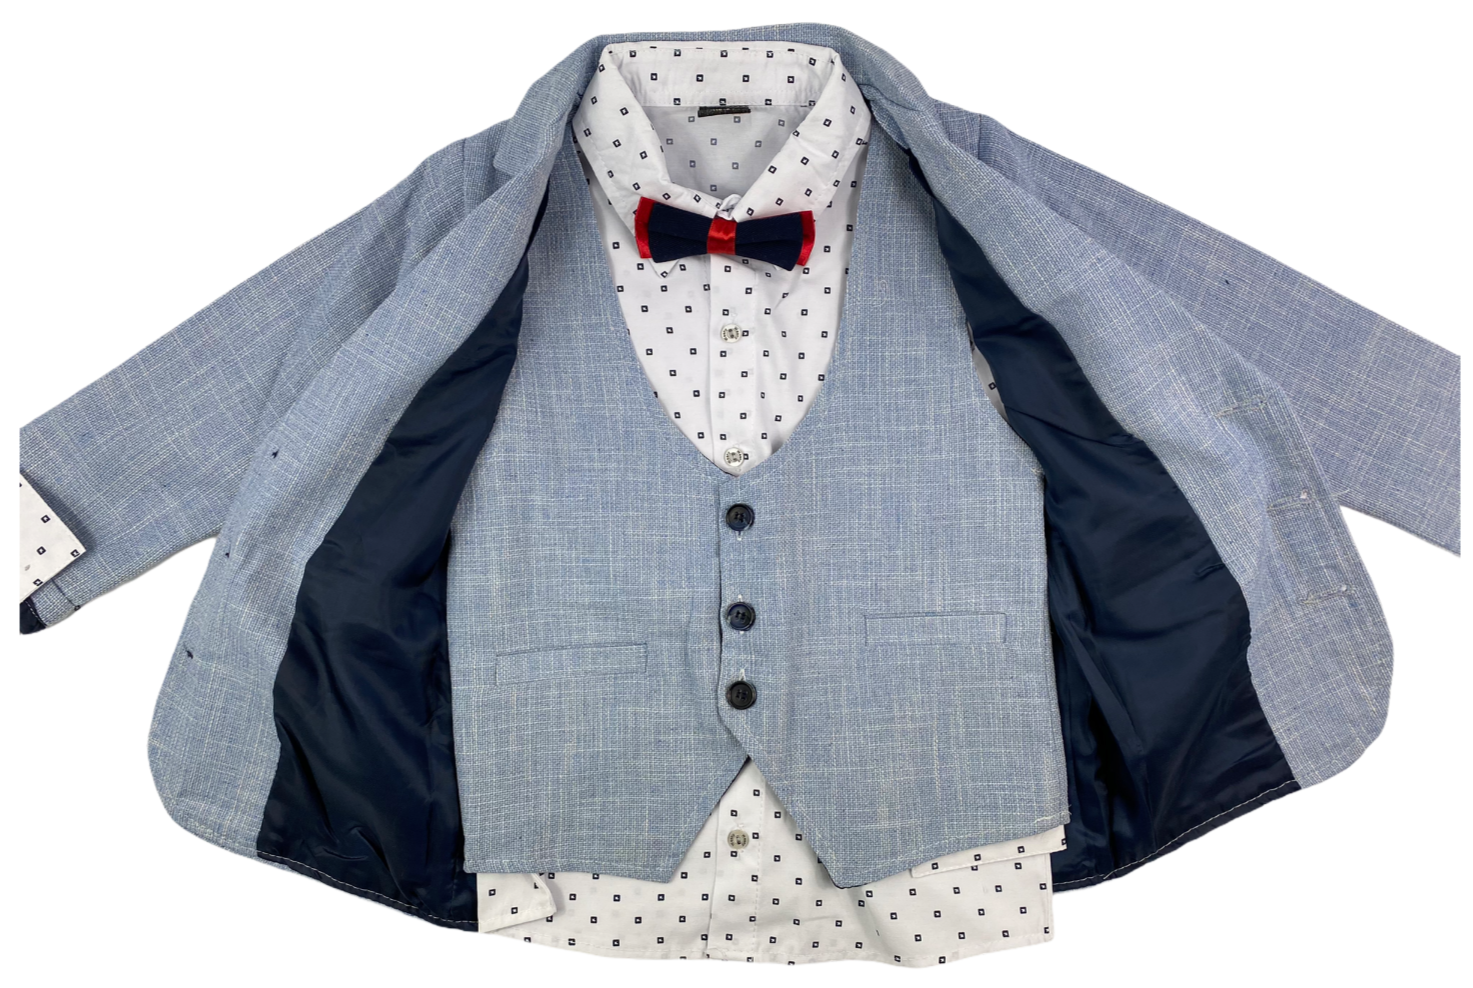 Sakko, Hose, Hemd, Weste & Fliege festliche Mode Anzug in hellblau/dun –  Aboutkidz